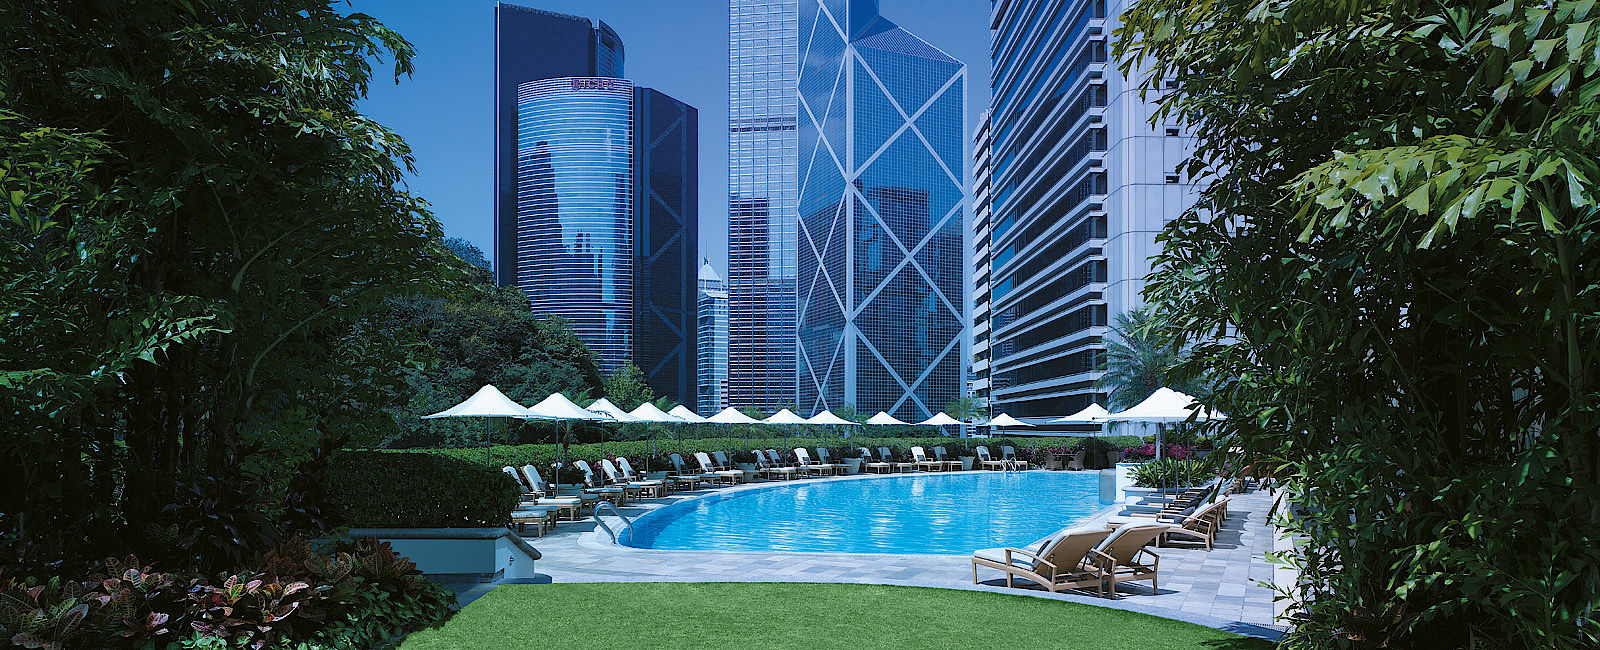 VERY SPECIAL HOTEL
 Island Shangri-La, Hongkong 
 Auf der schönen Seite 